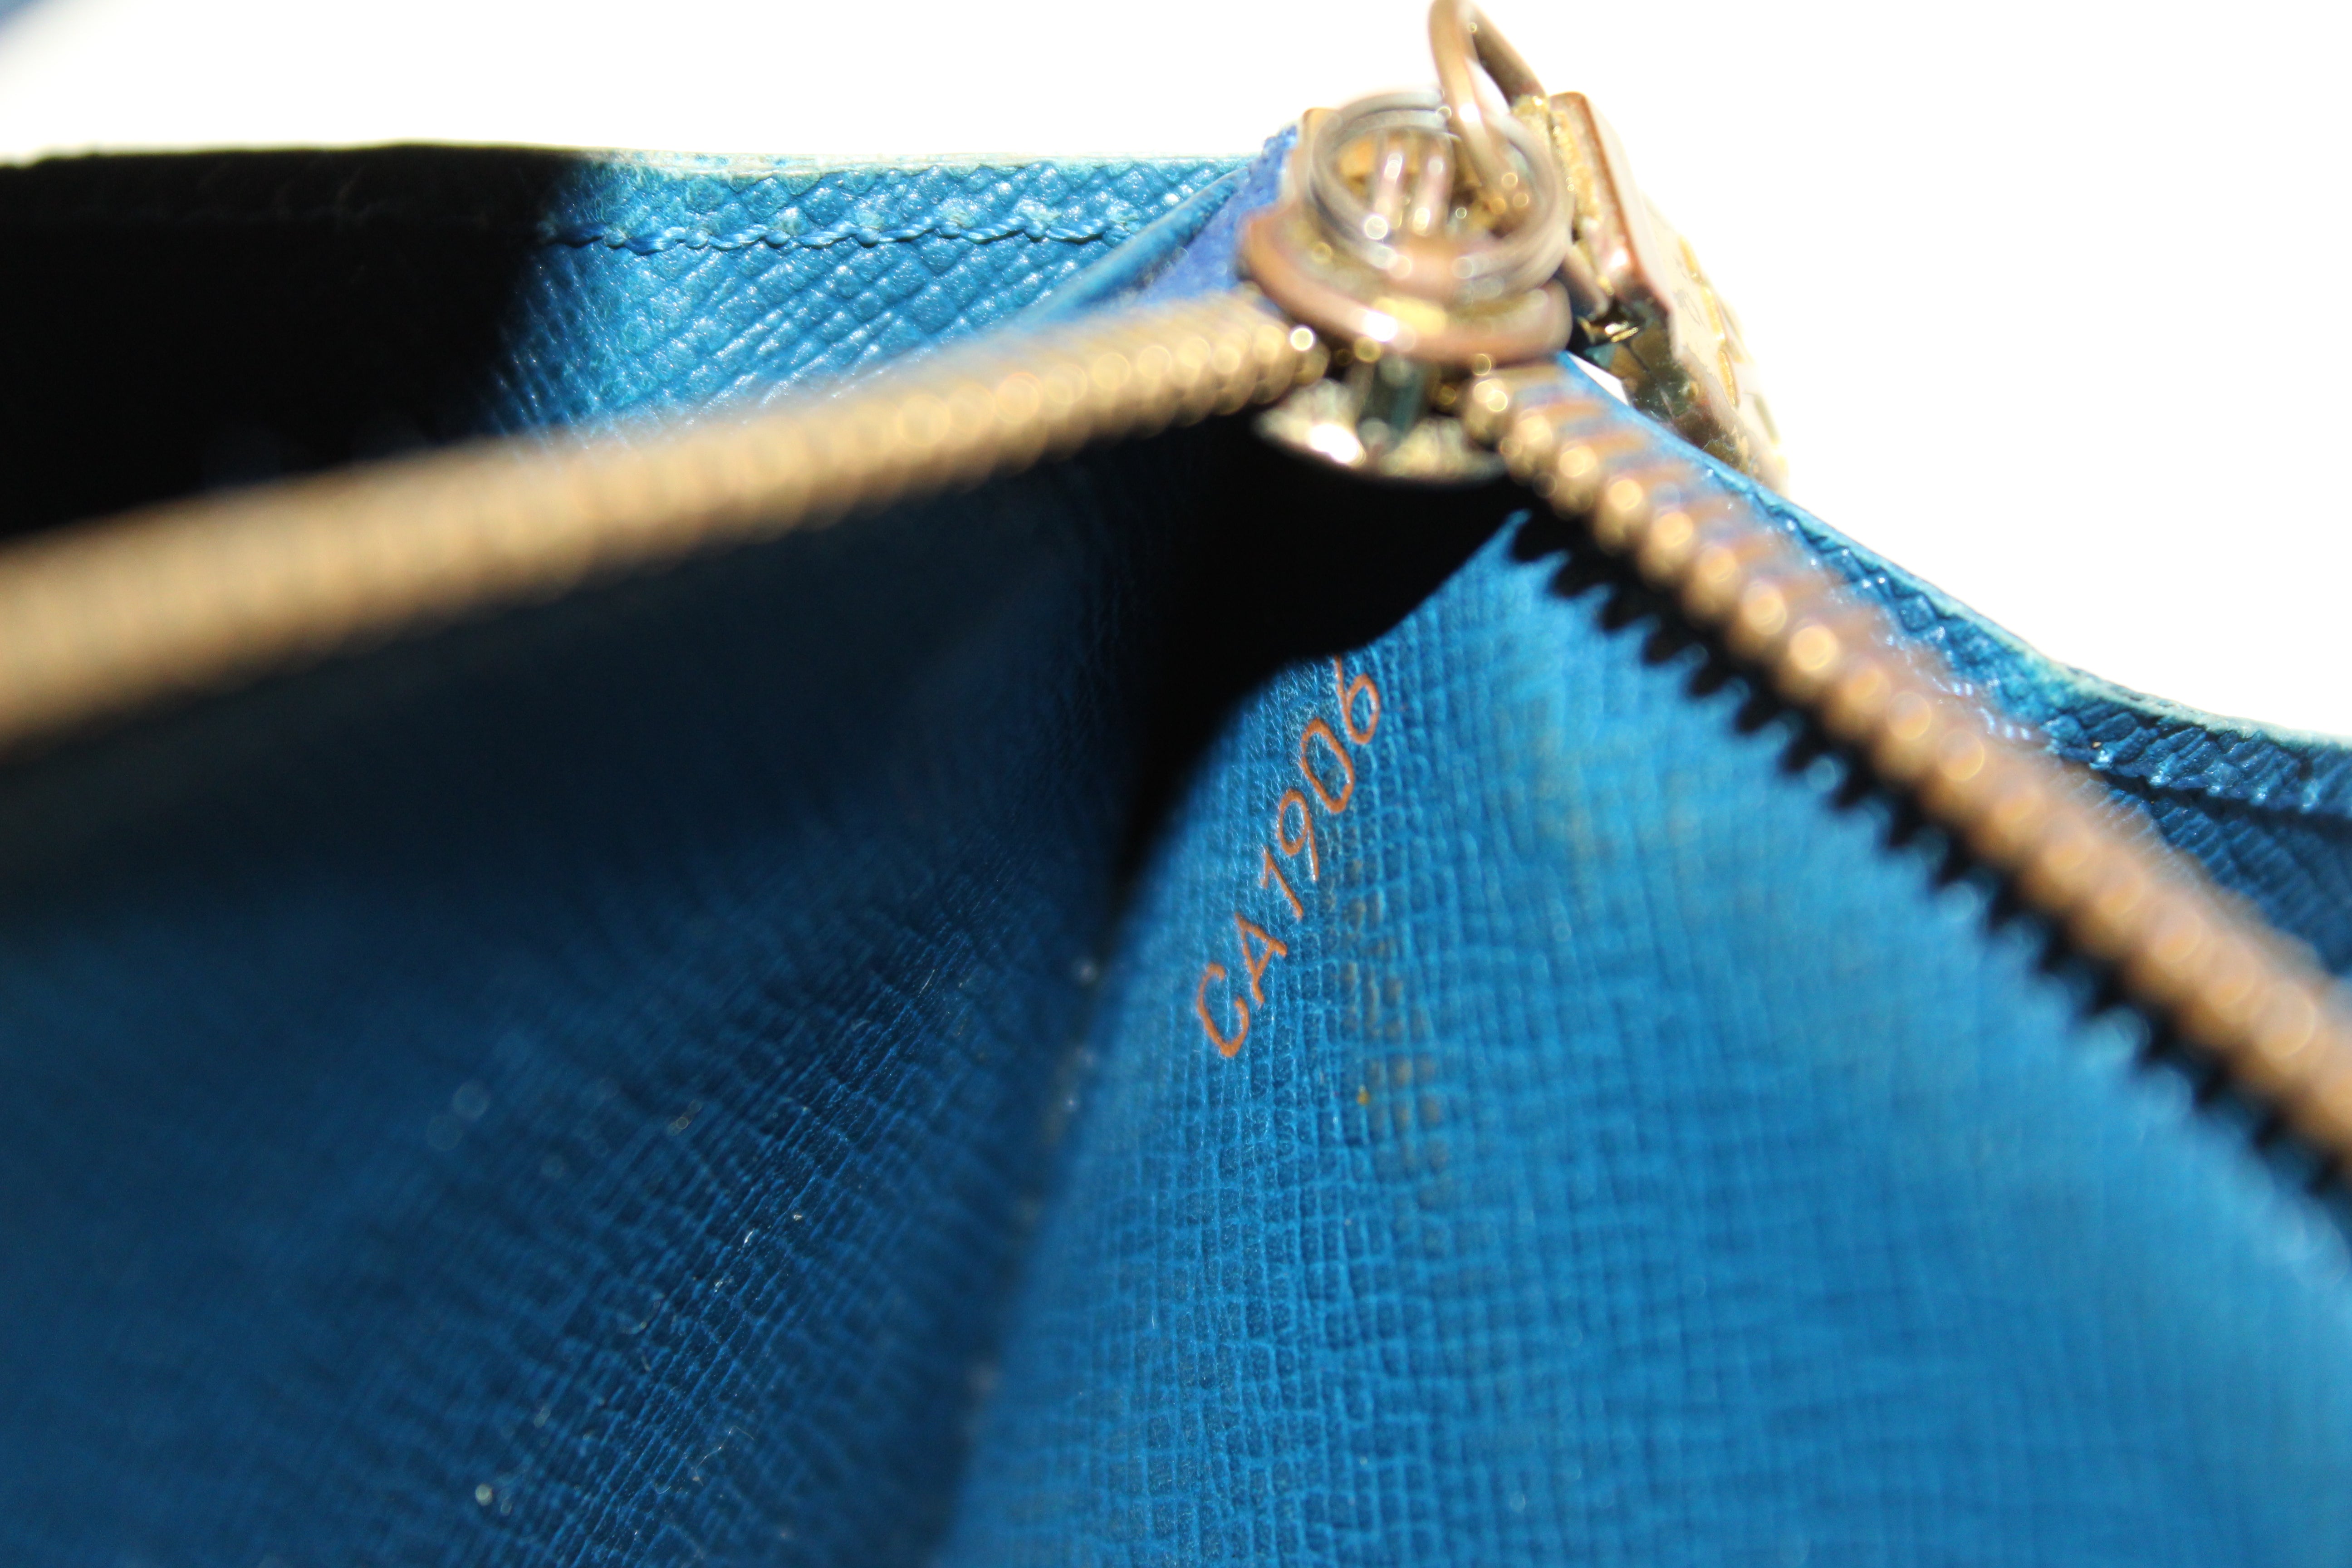 Authentic Louis Vuitton Blue Epi Leather Sarah Long Wallet